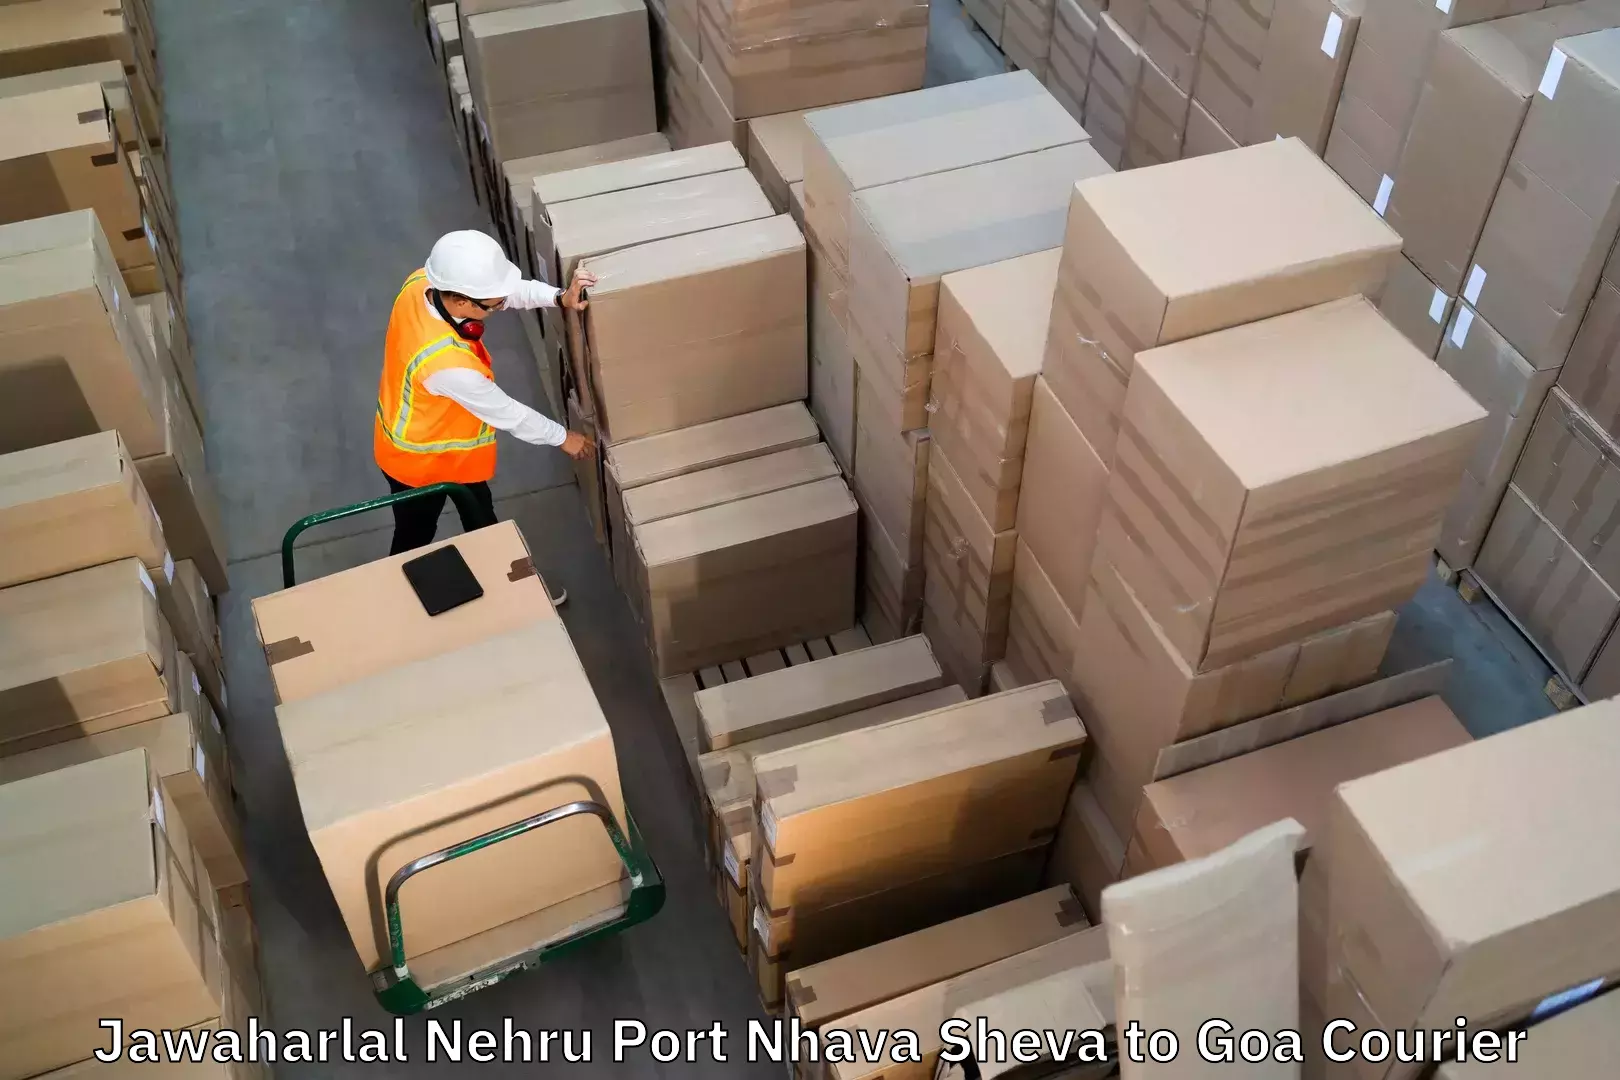 Luggage delivery system Jawaharlal Nehru Port Nhava Sheva to Ponda